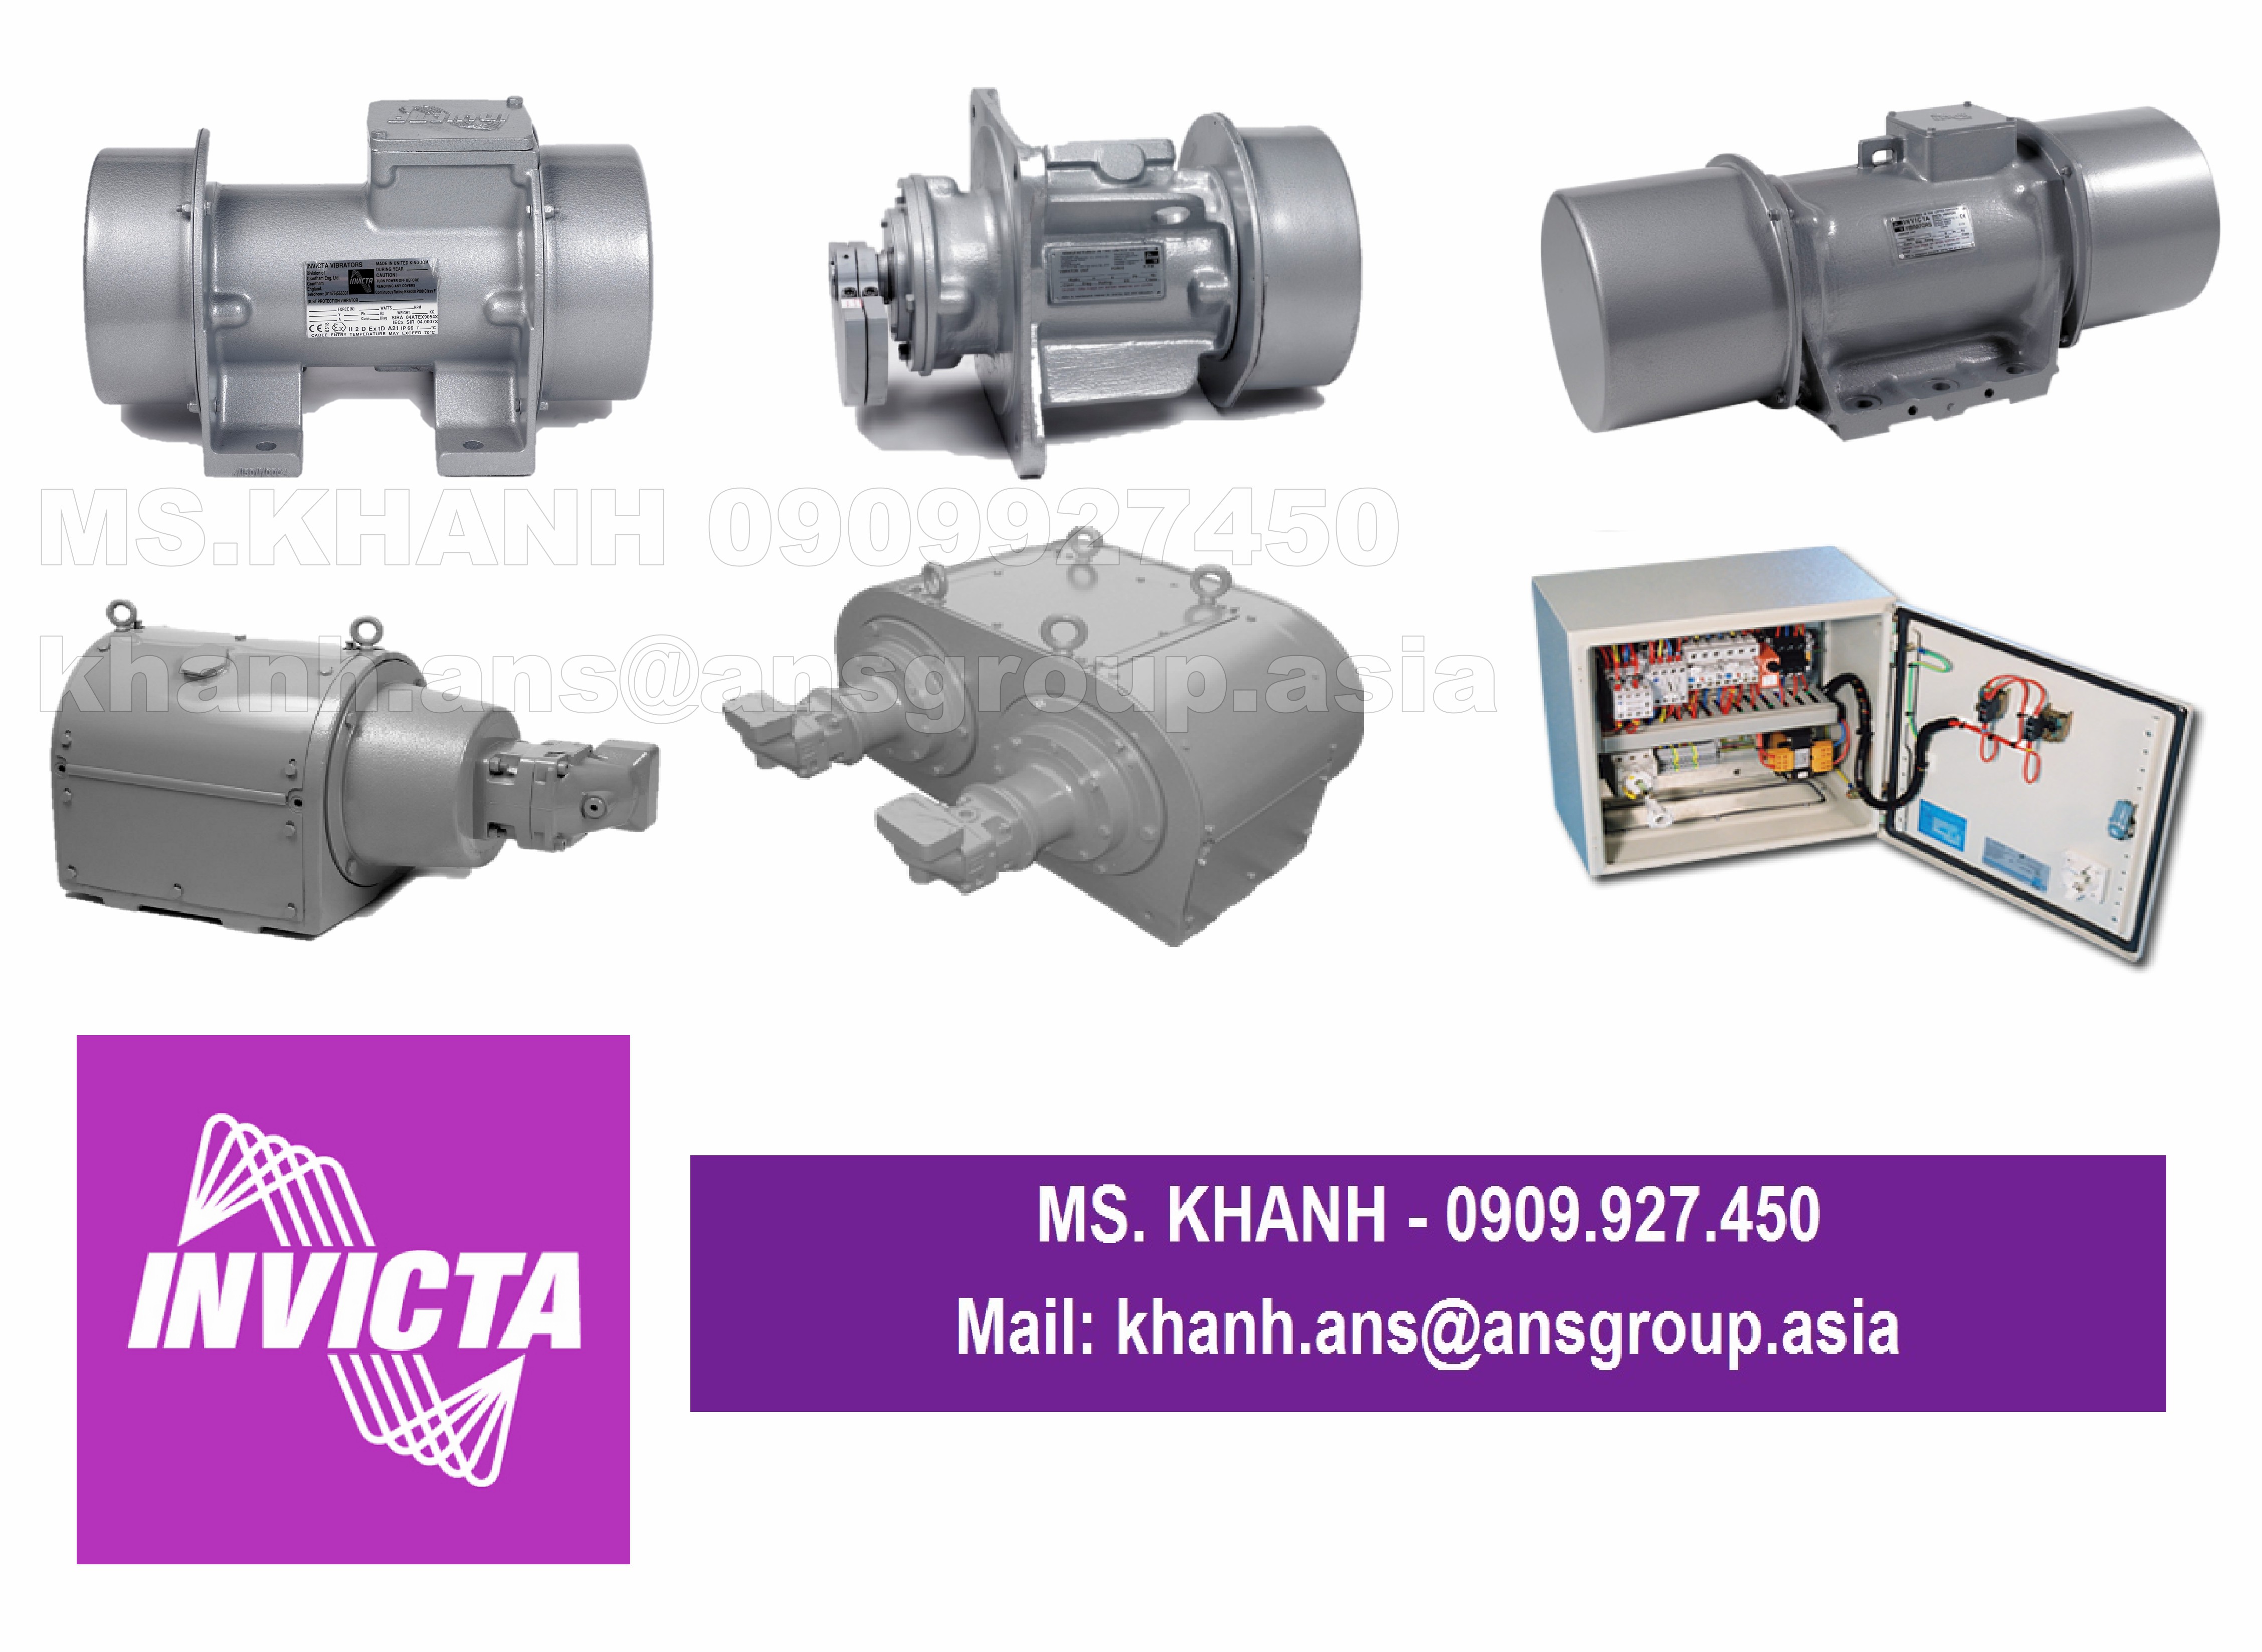 thiet-bi-ulbk-45-42-6-01-50-ua-ulbk45-42-6-ua-vibrator-invicta-vibrators-vietnam.png